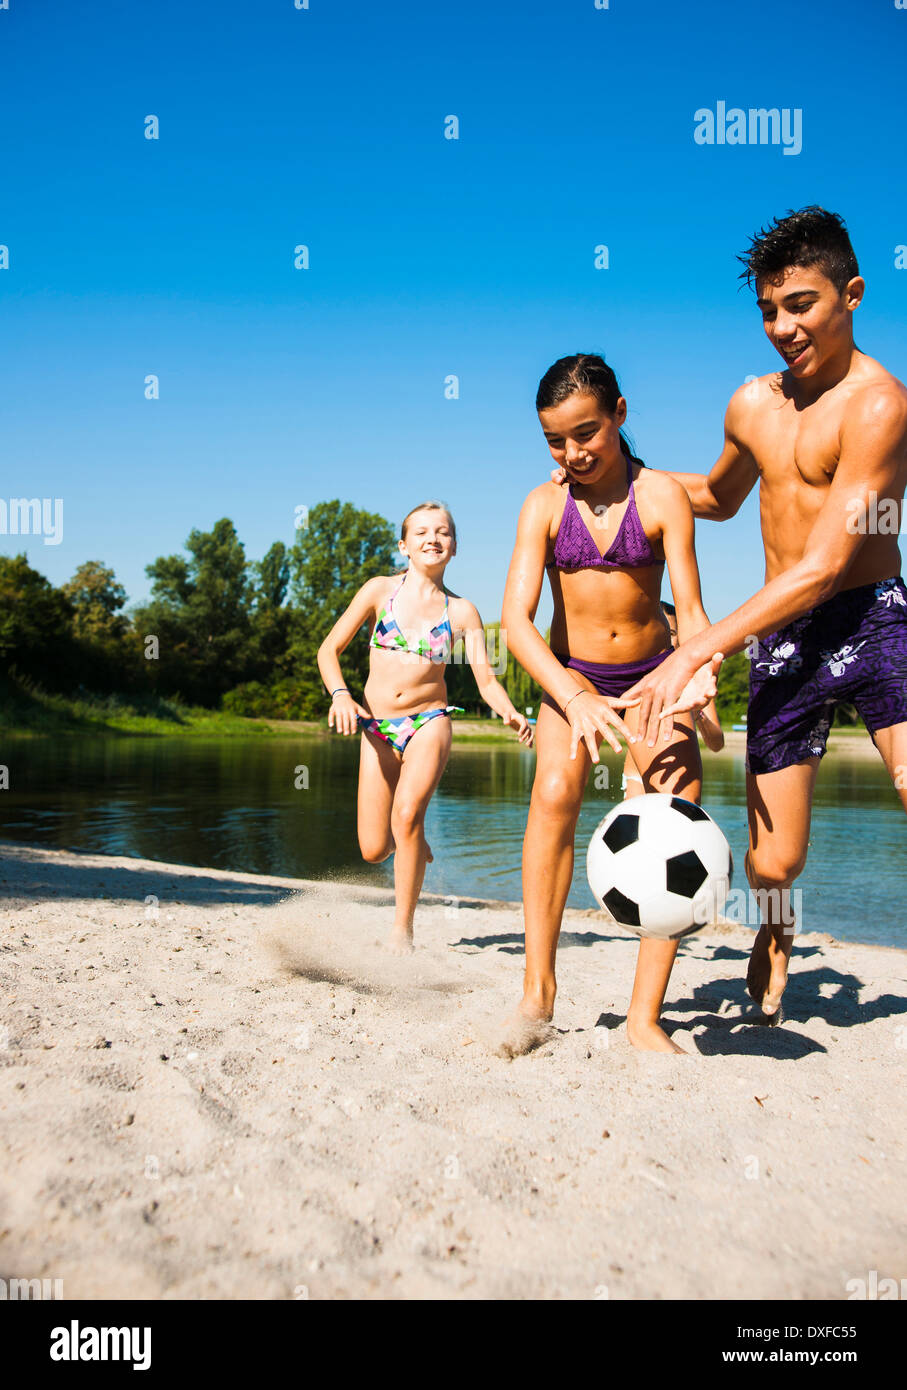 Kinder Spielen Fußball Am Strand See Lampertheim Hessen Deutschland Stockfotografie Alamy